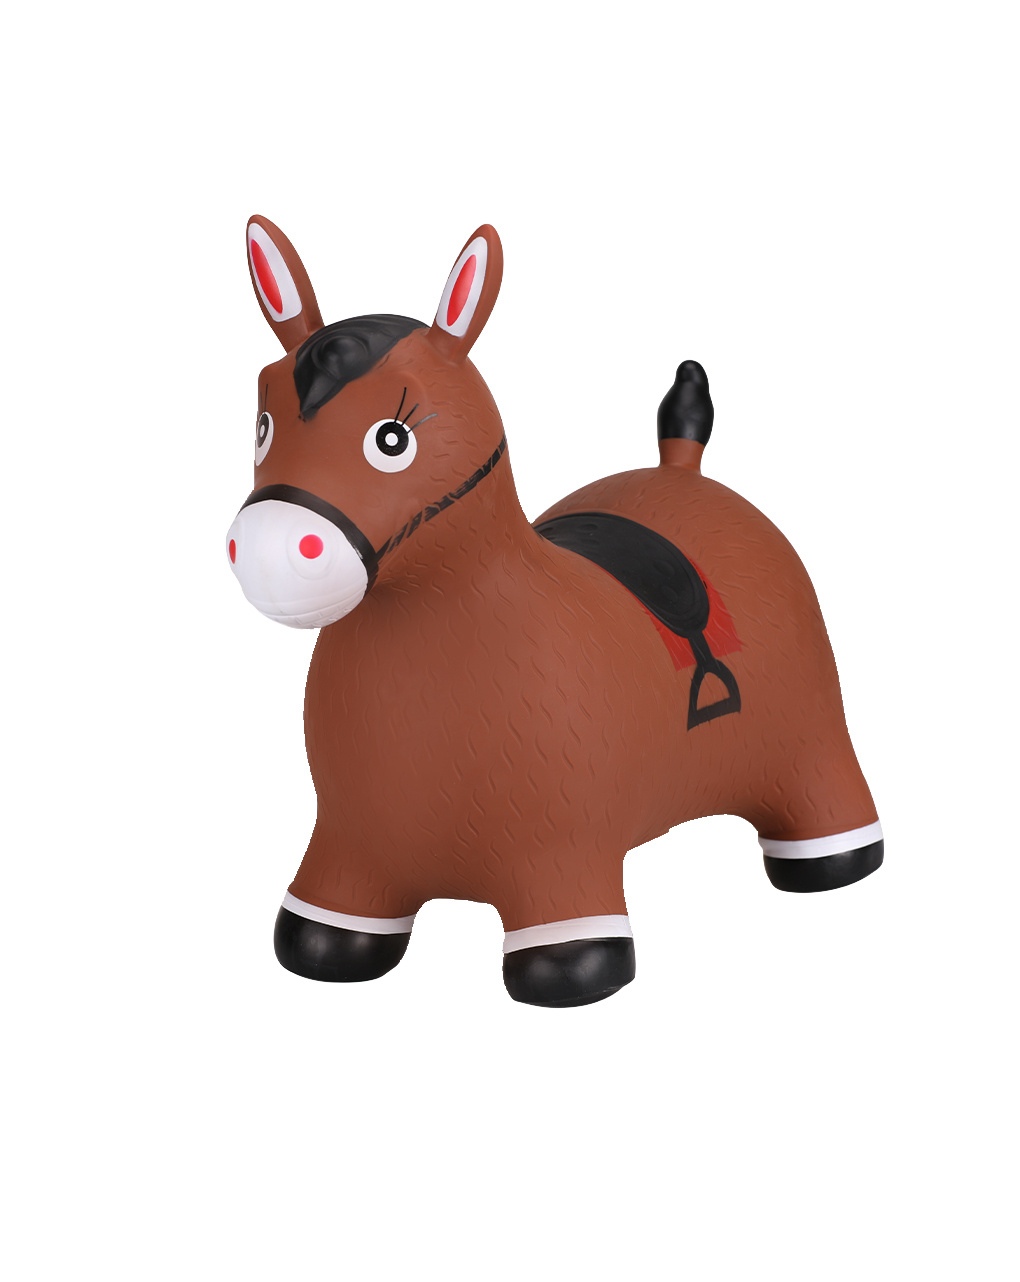 Rimbalzoo - charles, o cavalo - 10m+ - proludis toys - Pro